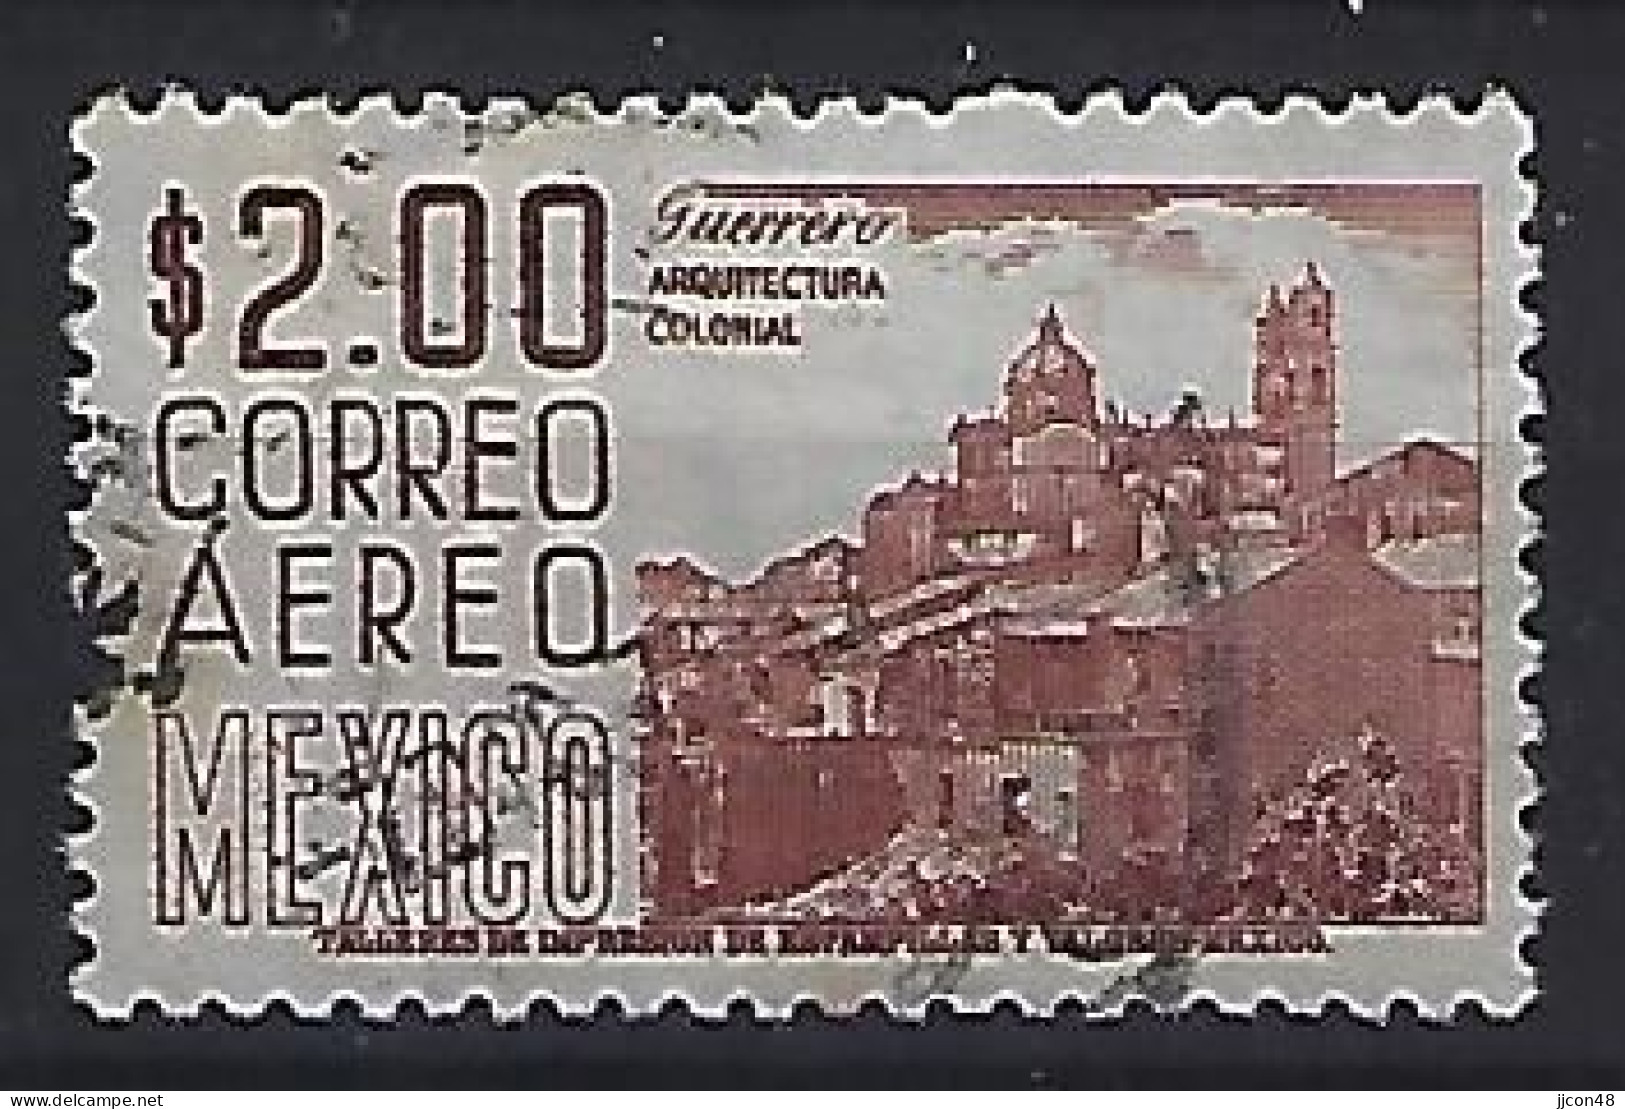 Mexico 1962-67  Einheimische Bilder (o) Mi.1129 A X Il (issued 1966) - Mexico